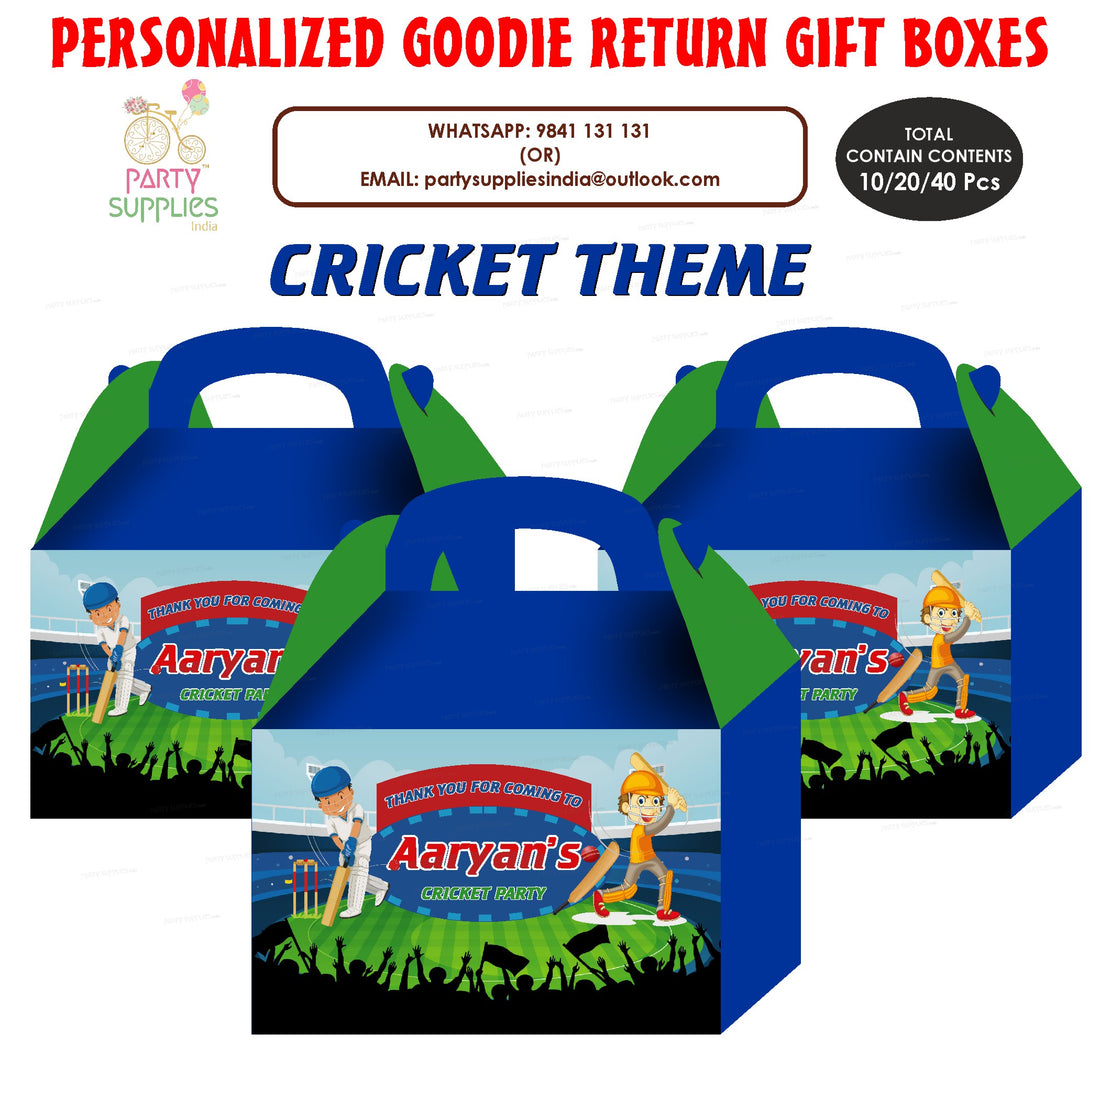 PSI Cricket theme Goodie Return Gift Boxes